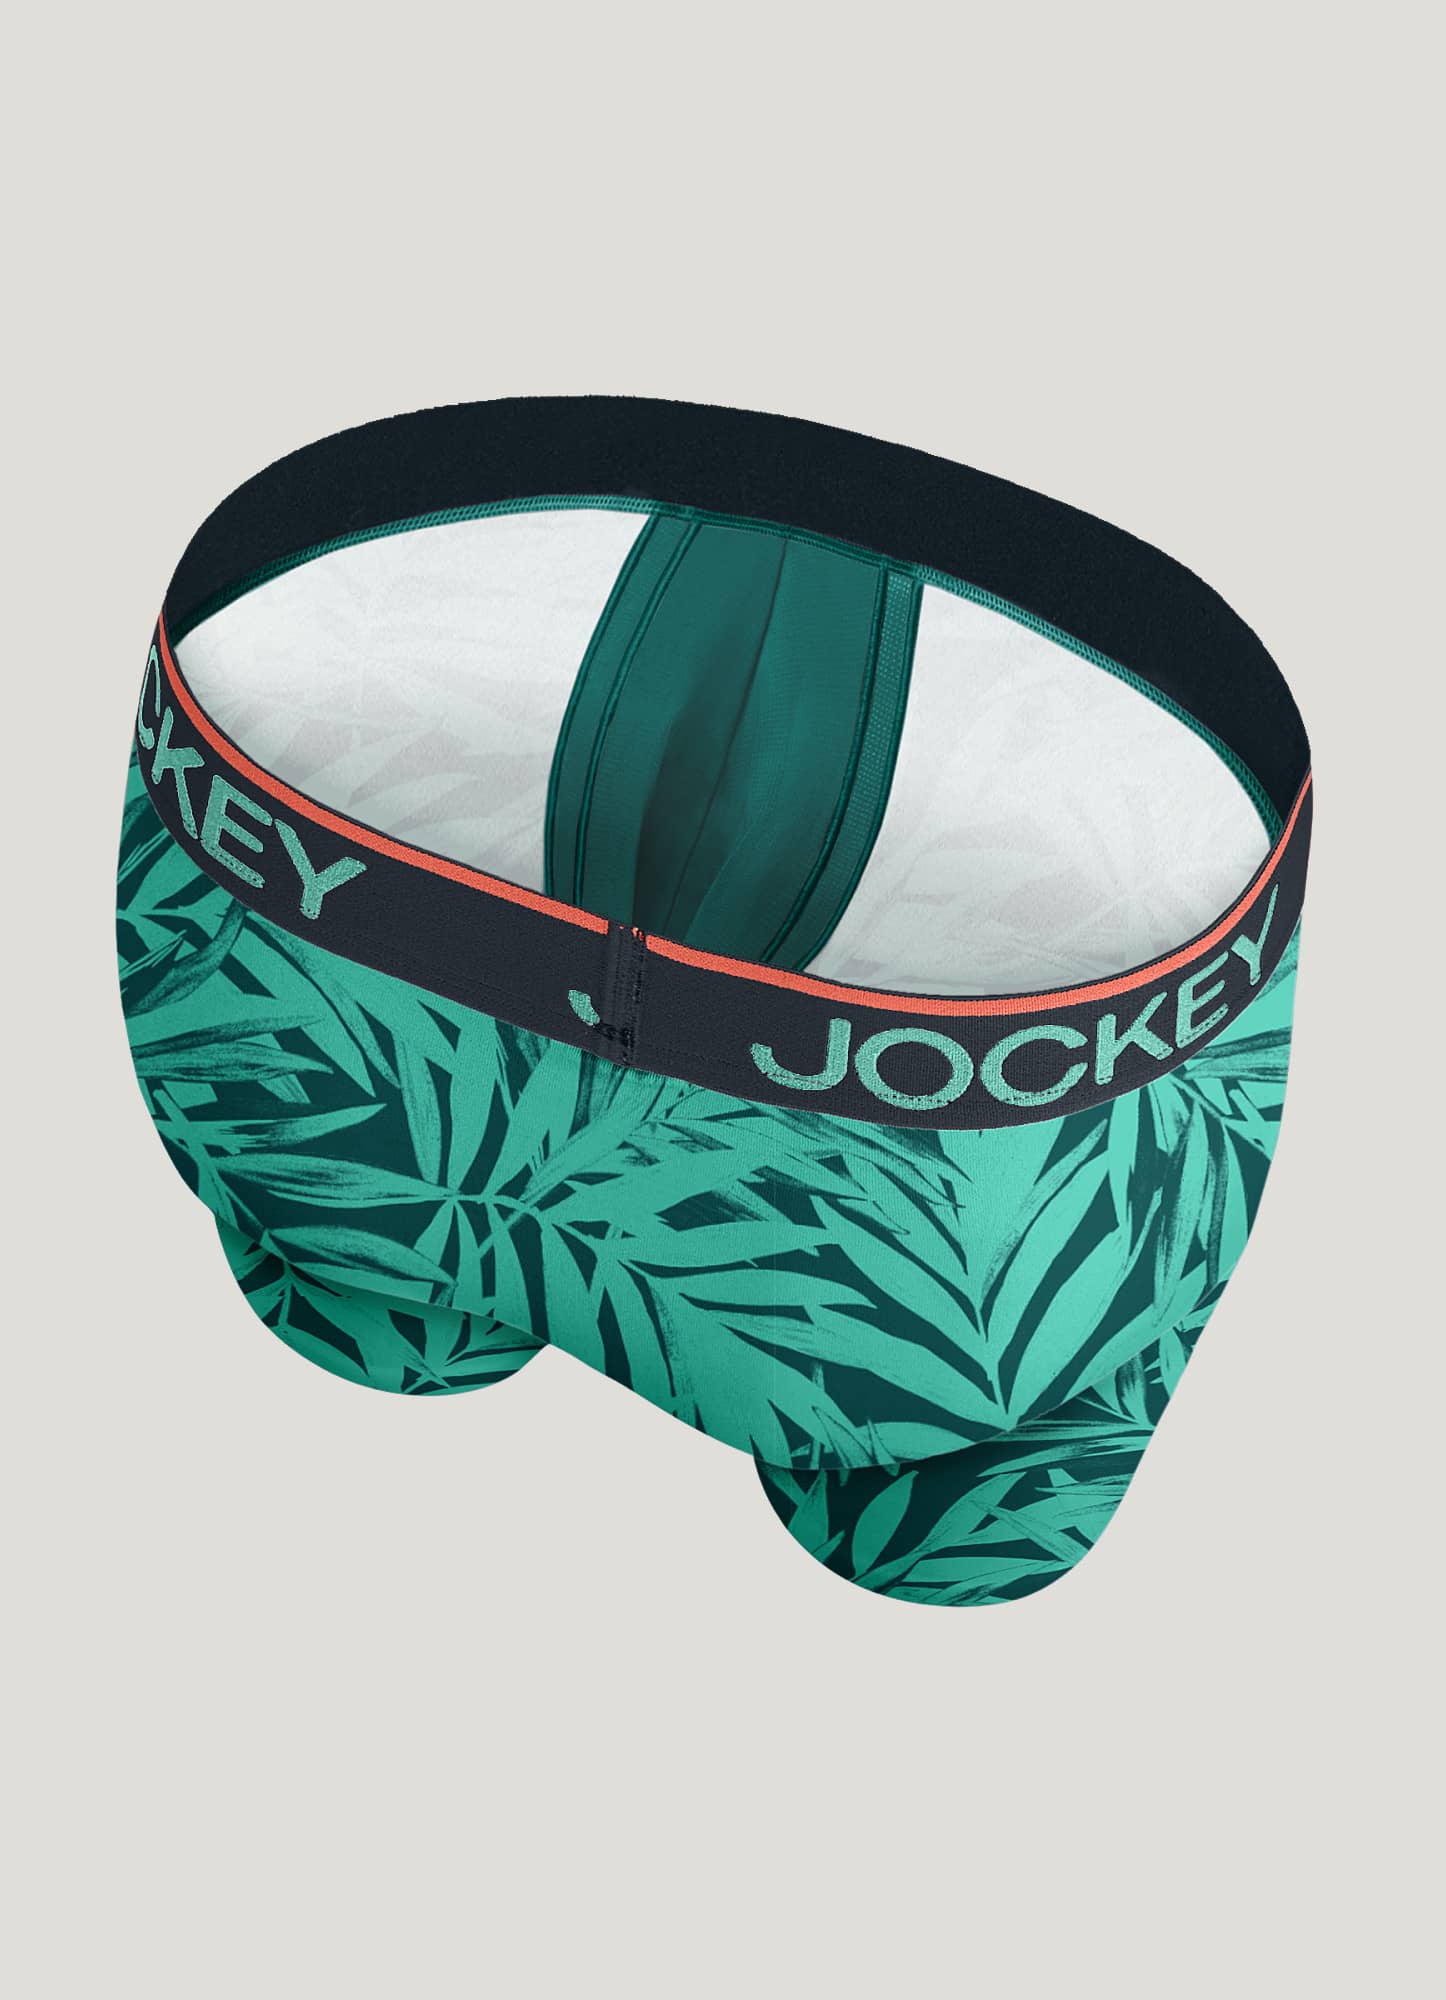 Good Luck Undies Kraken Boxer Brief Underwear No Chafe Anti Roll Waistband  LG